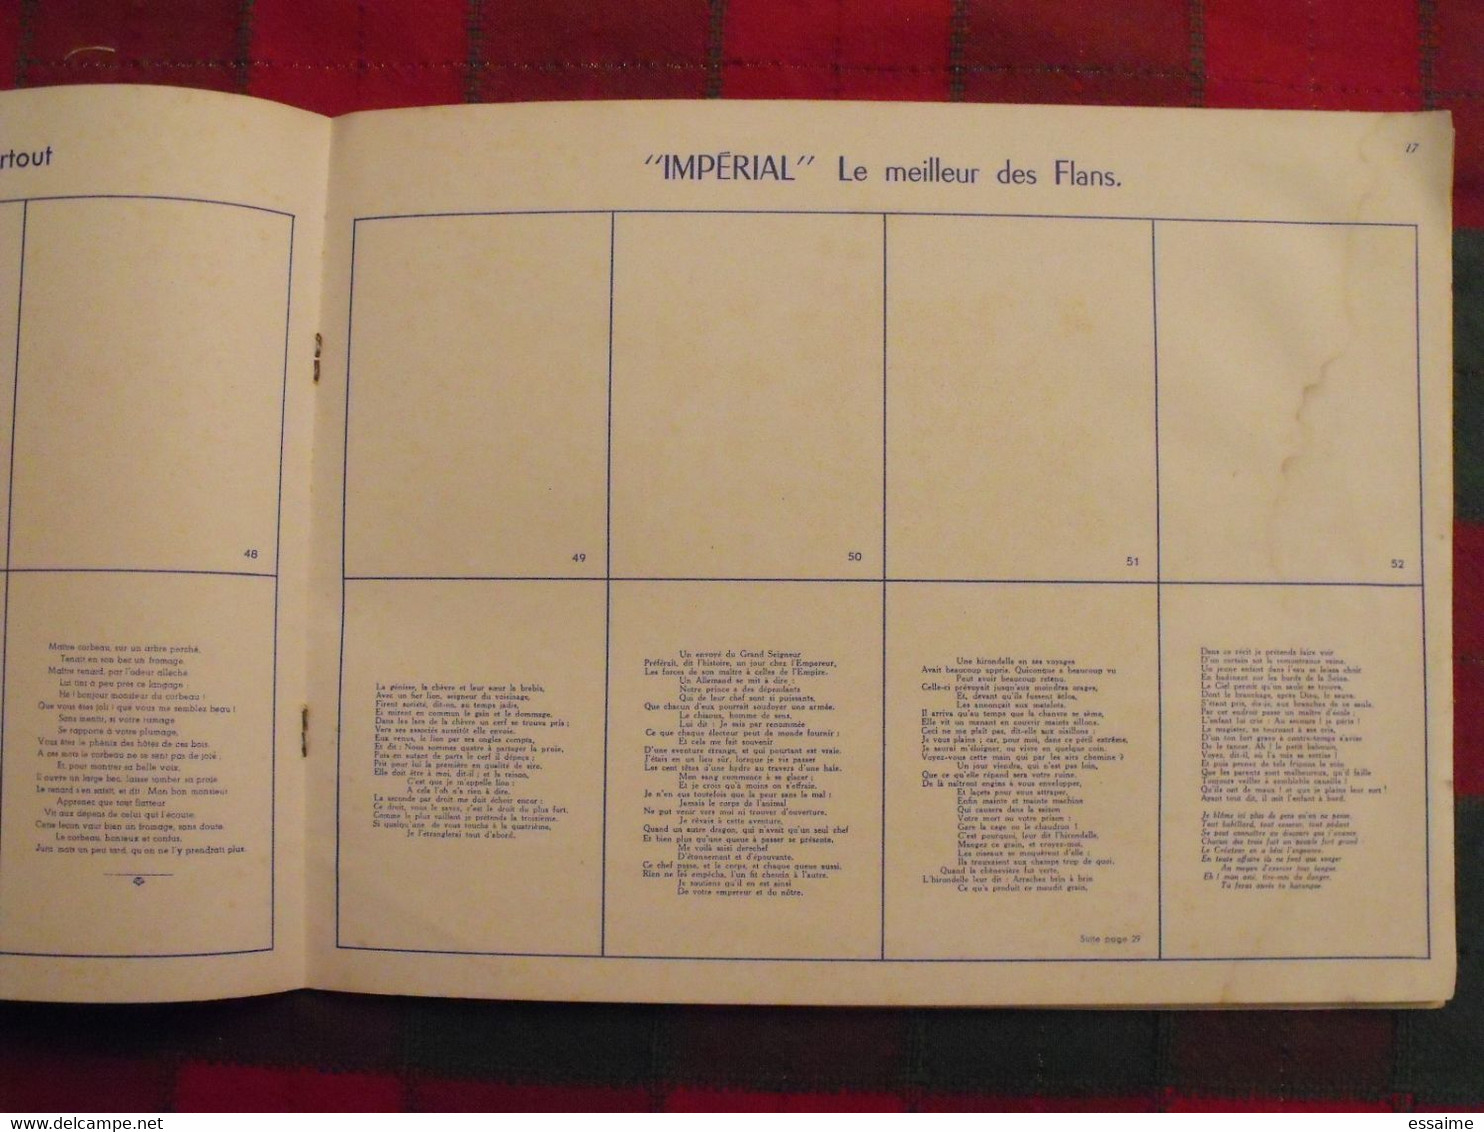 album d'images Fables de La Fontaine. flan entremets Impérial. vide. vers 1960. lot 6